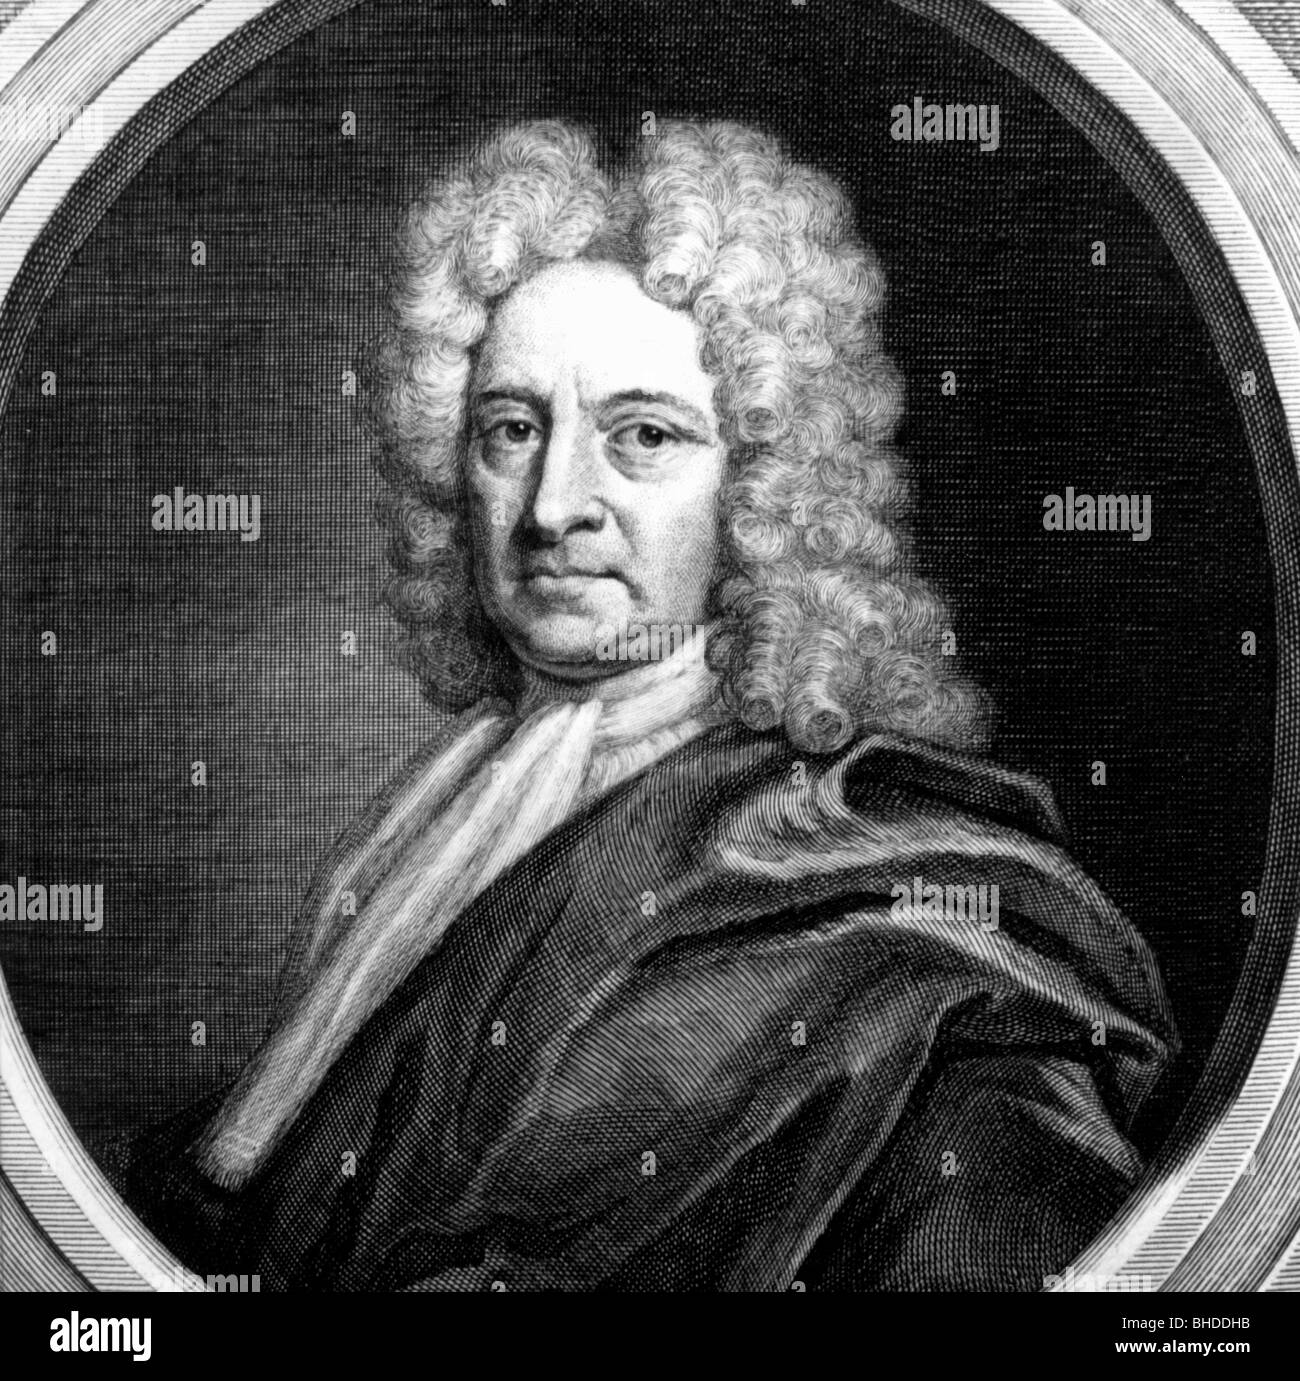 Halley, Edmund, 29.10.1656 - 14.1.1742, astronomo inglese, ritratto, incisione su rame, XVIII secolo , artista del diritto d'autore non deve essere cancellata Foto Stock